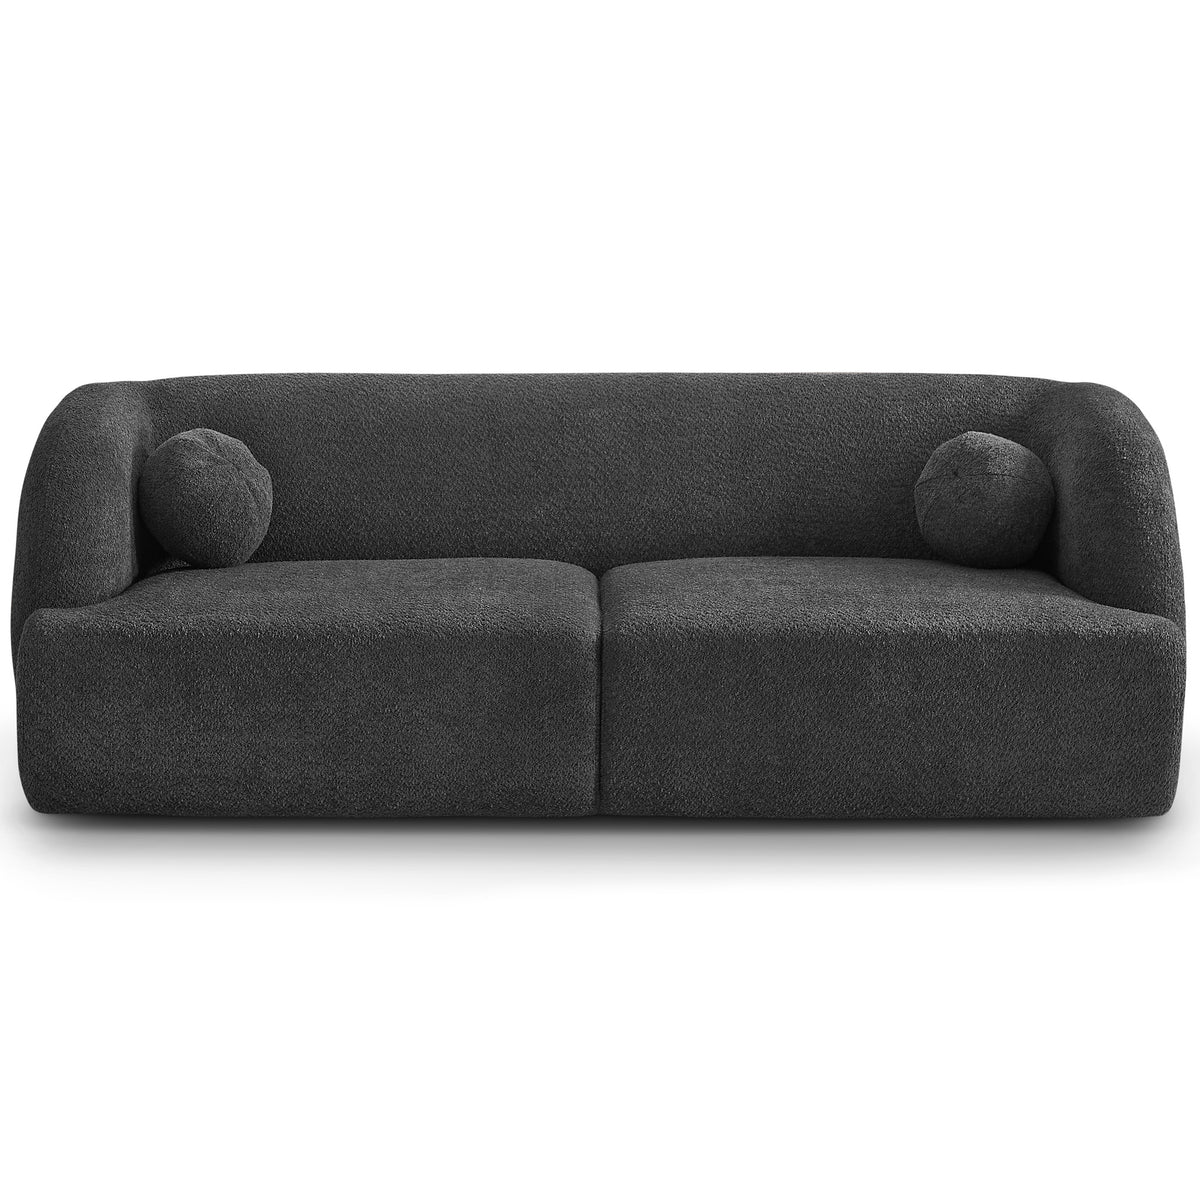 Quinn Grey Boucle Sofa - MidinMod Houston Tx Mid Century Furniture Store - Sofas 1